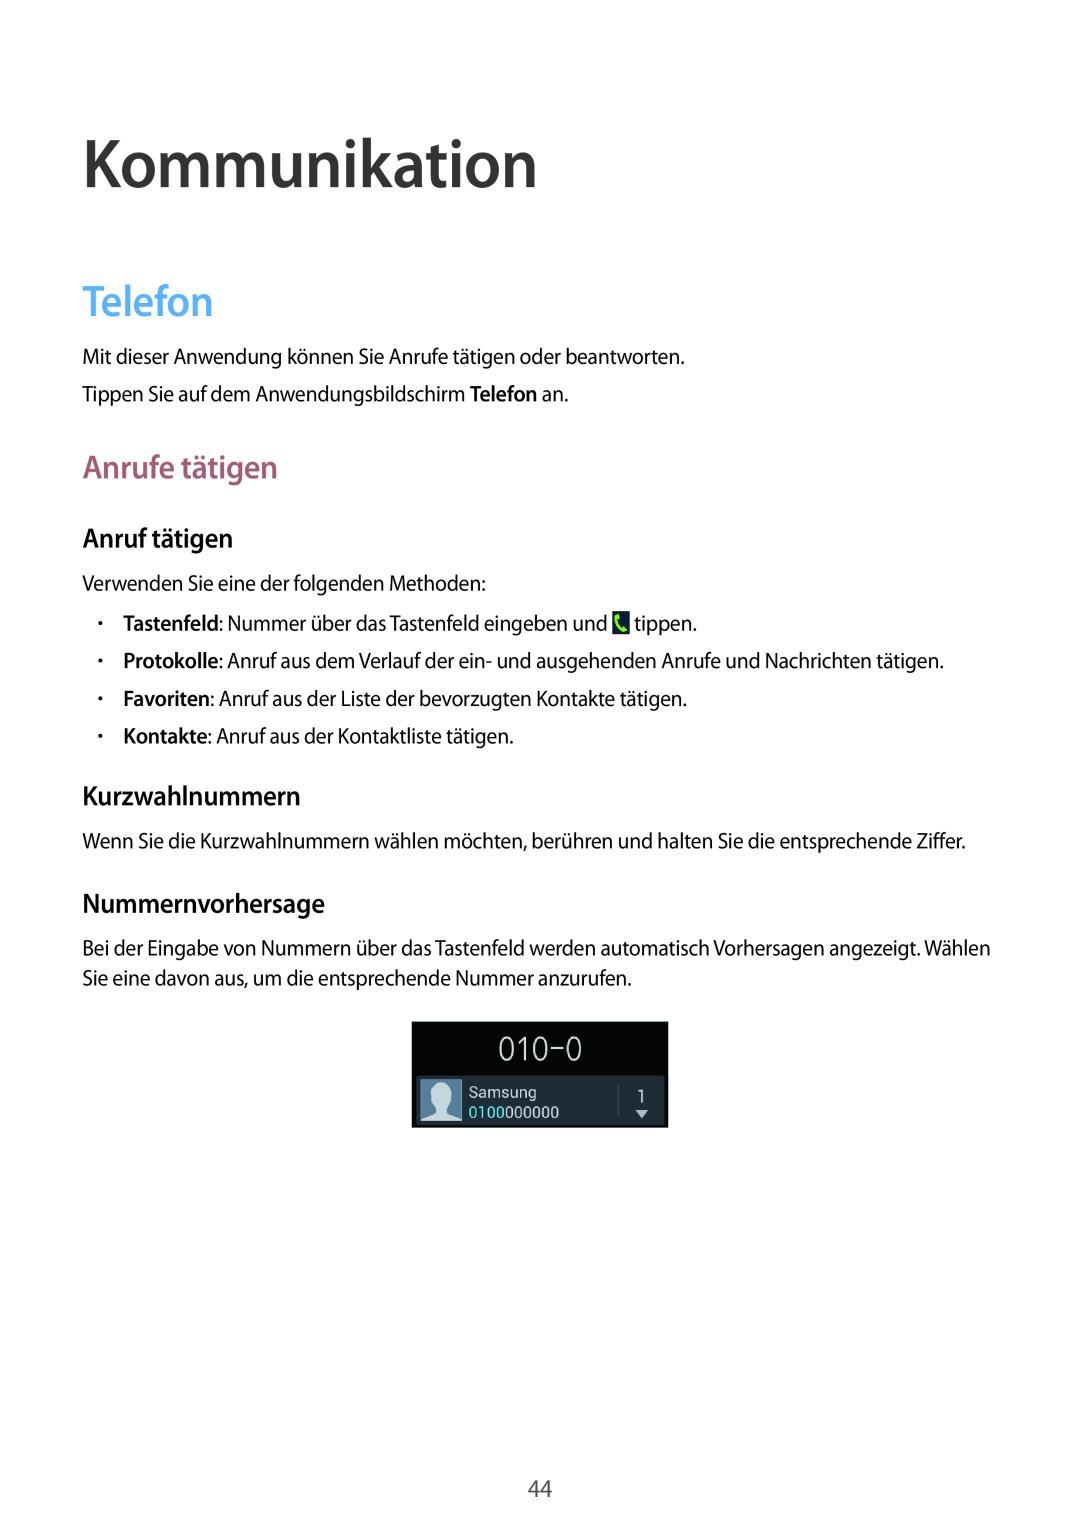 Samsung GT-I8190RWAATO manual Kommunikation, Telefon, Anrufe tätigen, Anruf tätigen, Kurzwahlnummern, Nummernvorhersage 